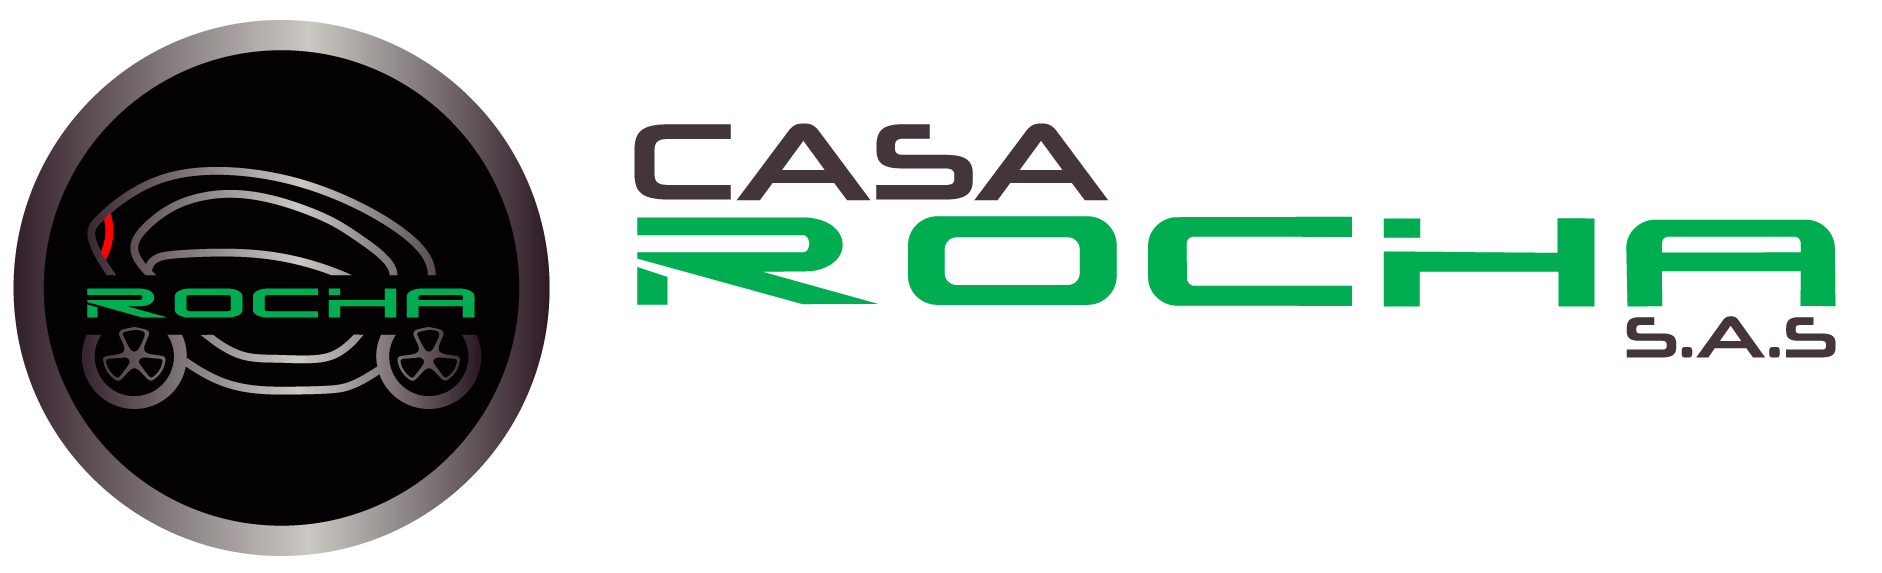 Noviembre 2019 - CASA ROCHA S.A.S.CASA ROCHA S.A.S.